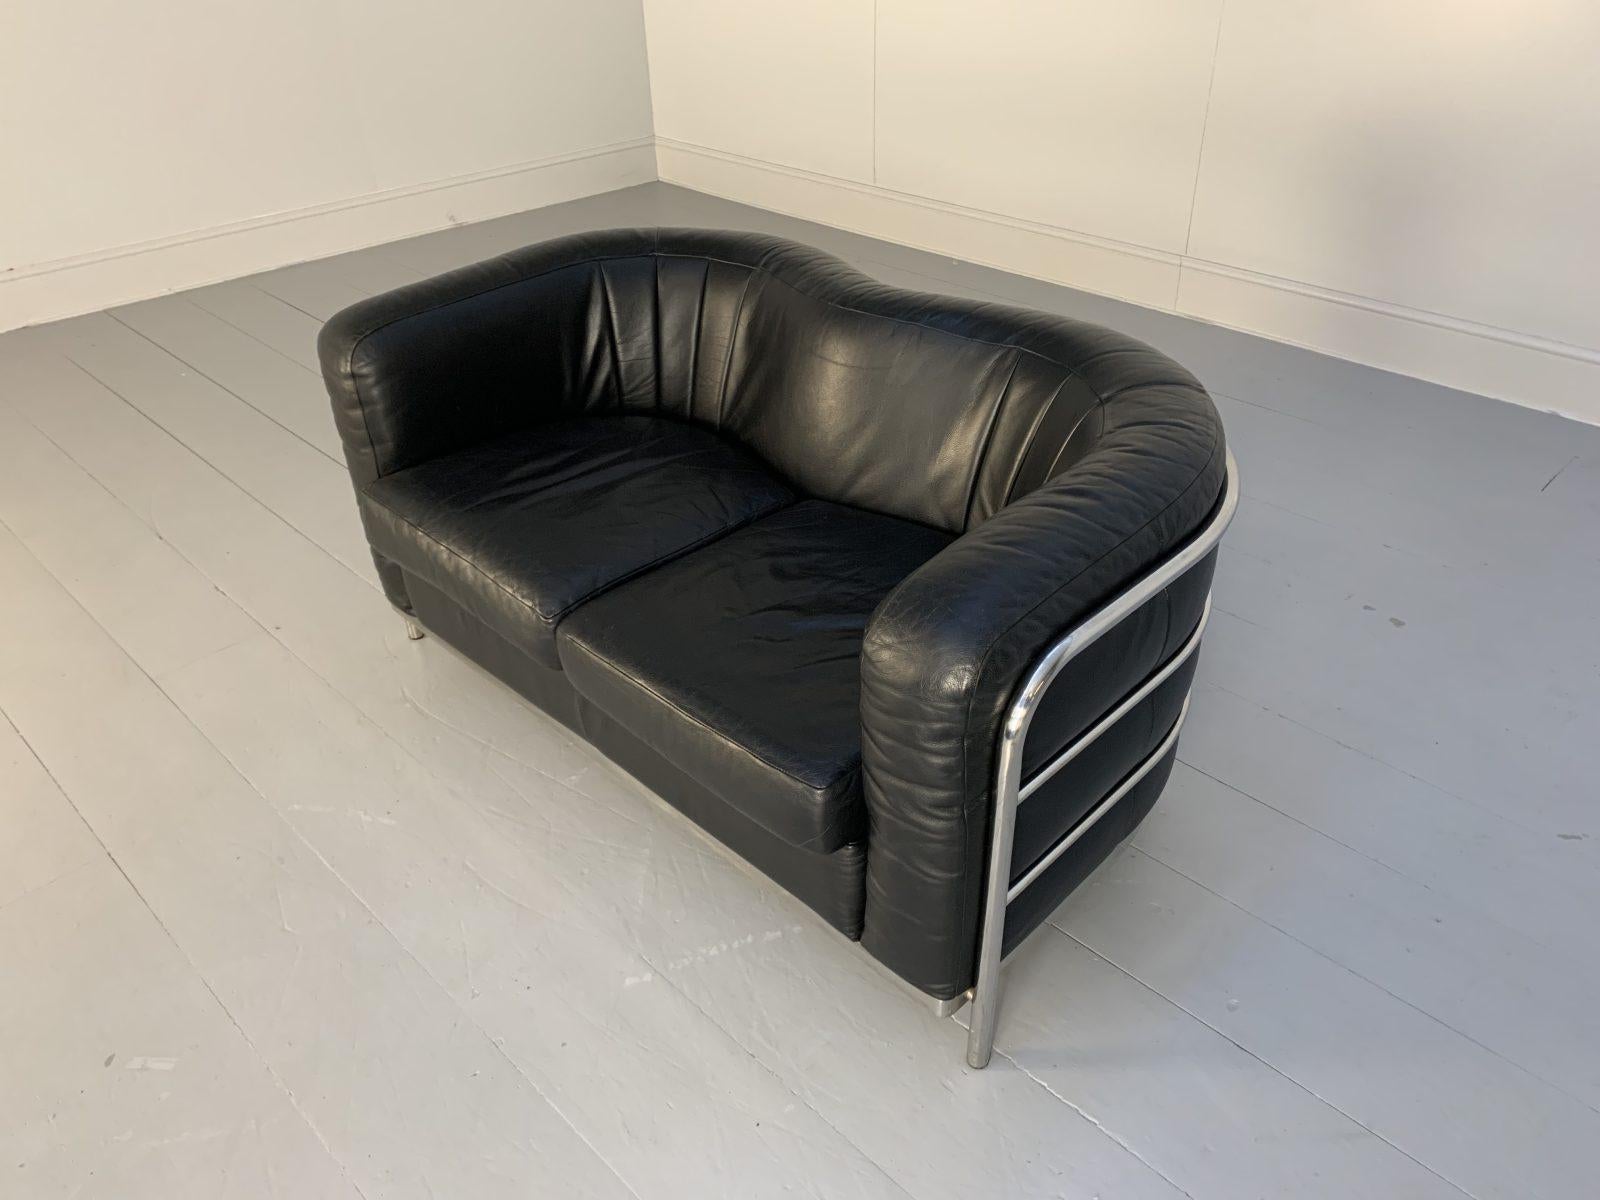 Zanotta “Onda” Sofa – 2-Seat – in Black “Scozia” Leather and Chrome For Sale 1